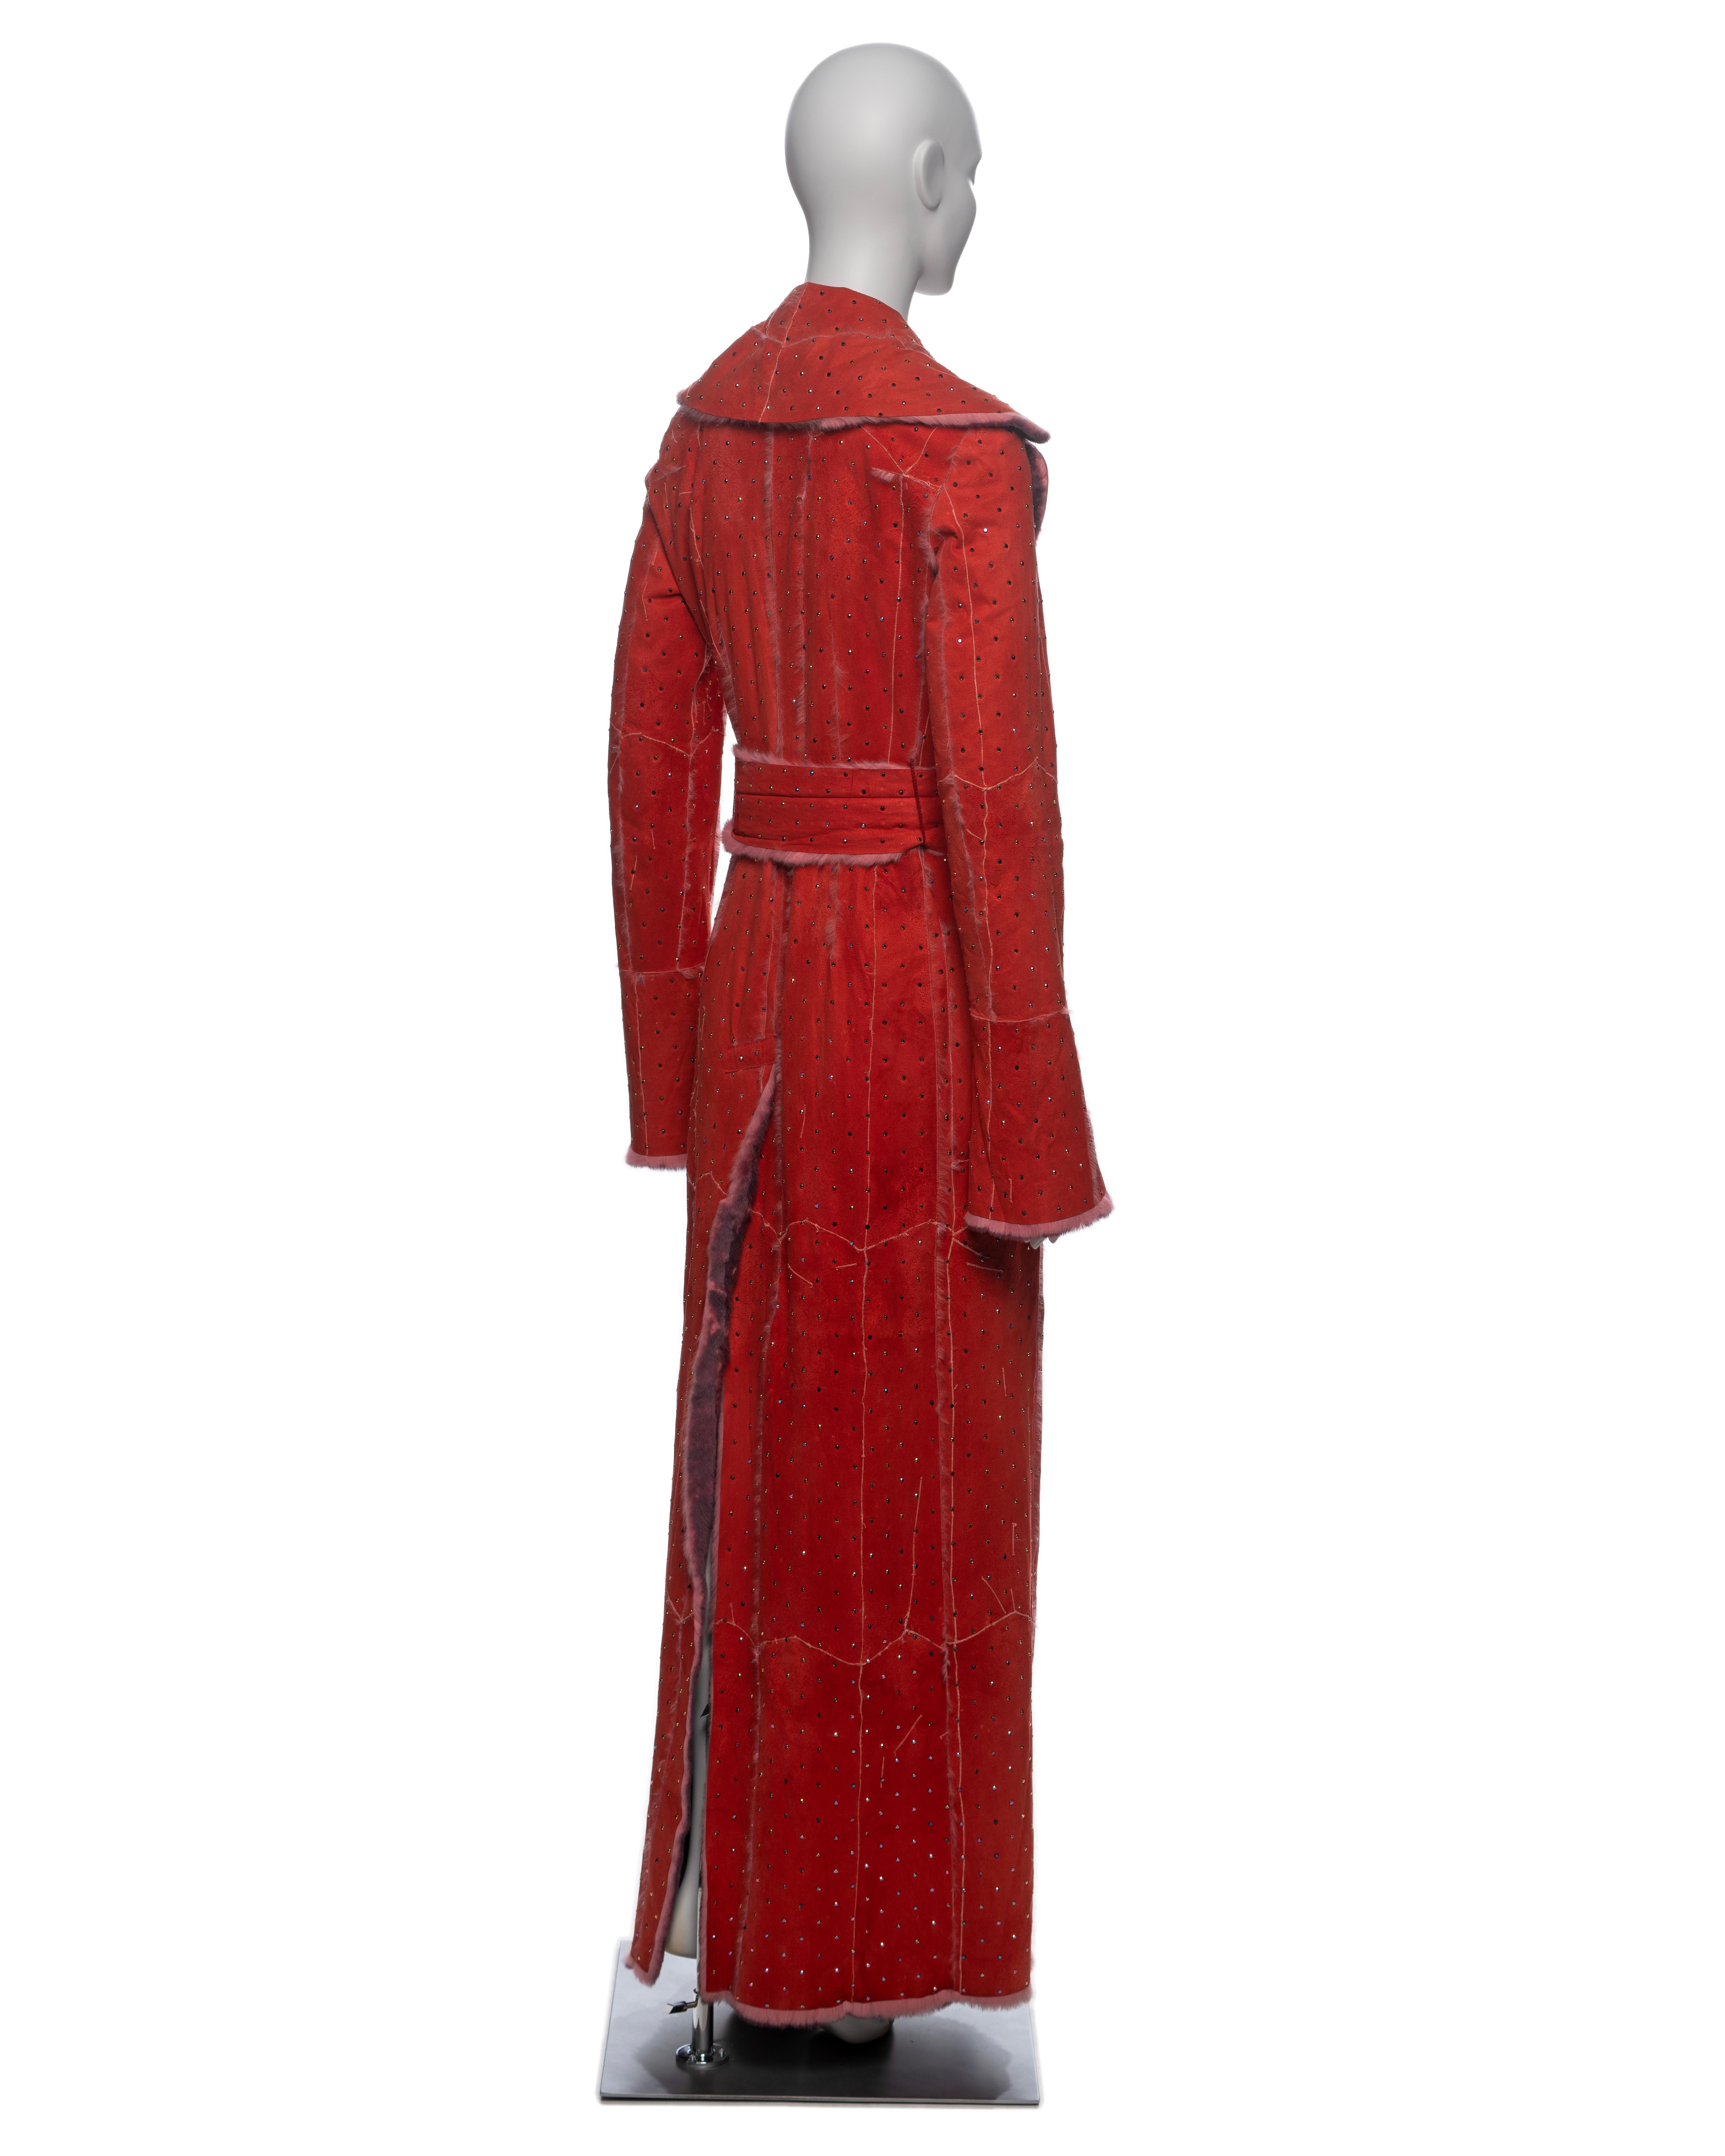 Dolce & Gabbana Crystal Adorned Red Mink Floor-Length Coat, FW 2000 For Sale 6